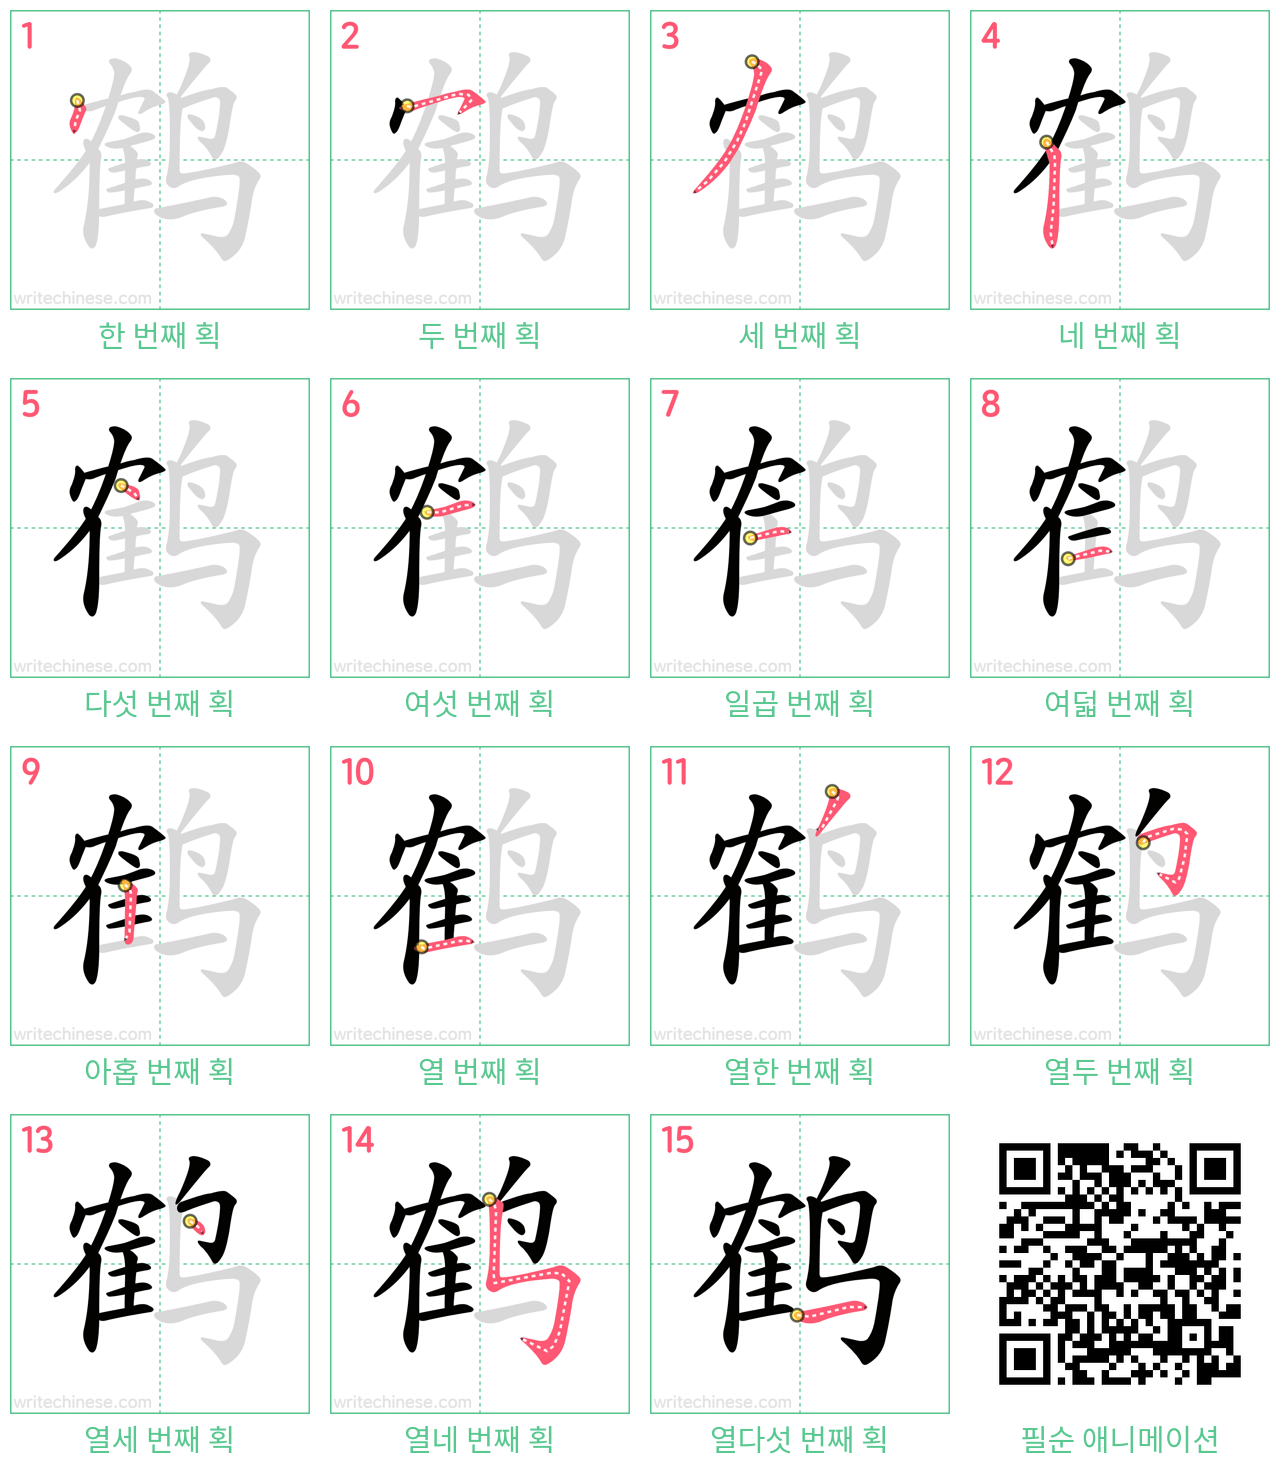 鹤 step-by-step stroke order diagrams